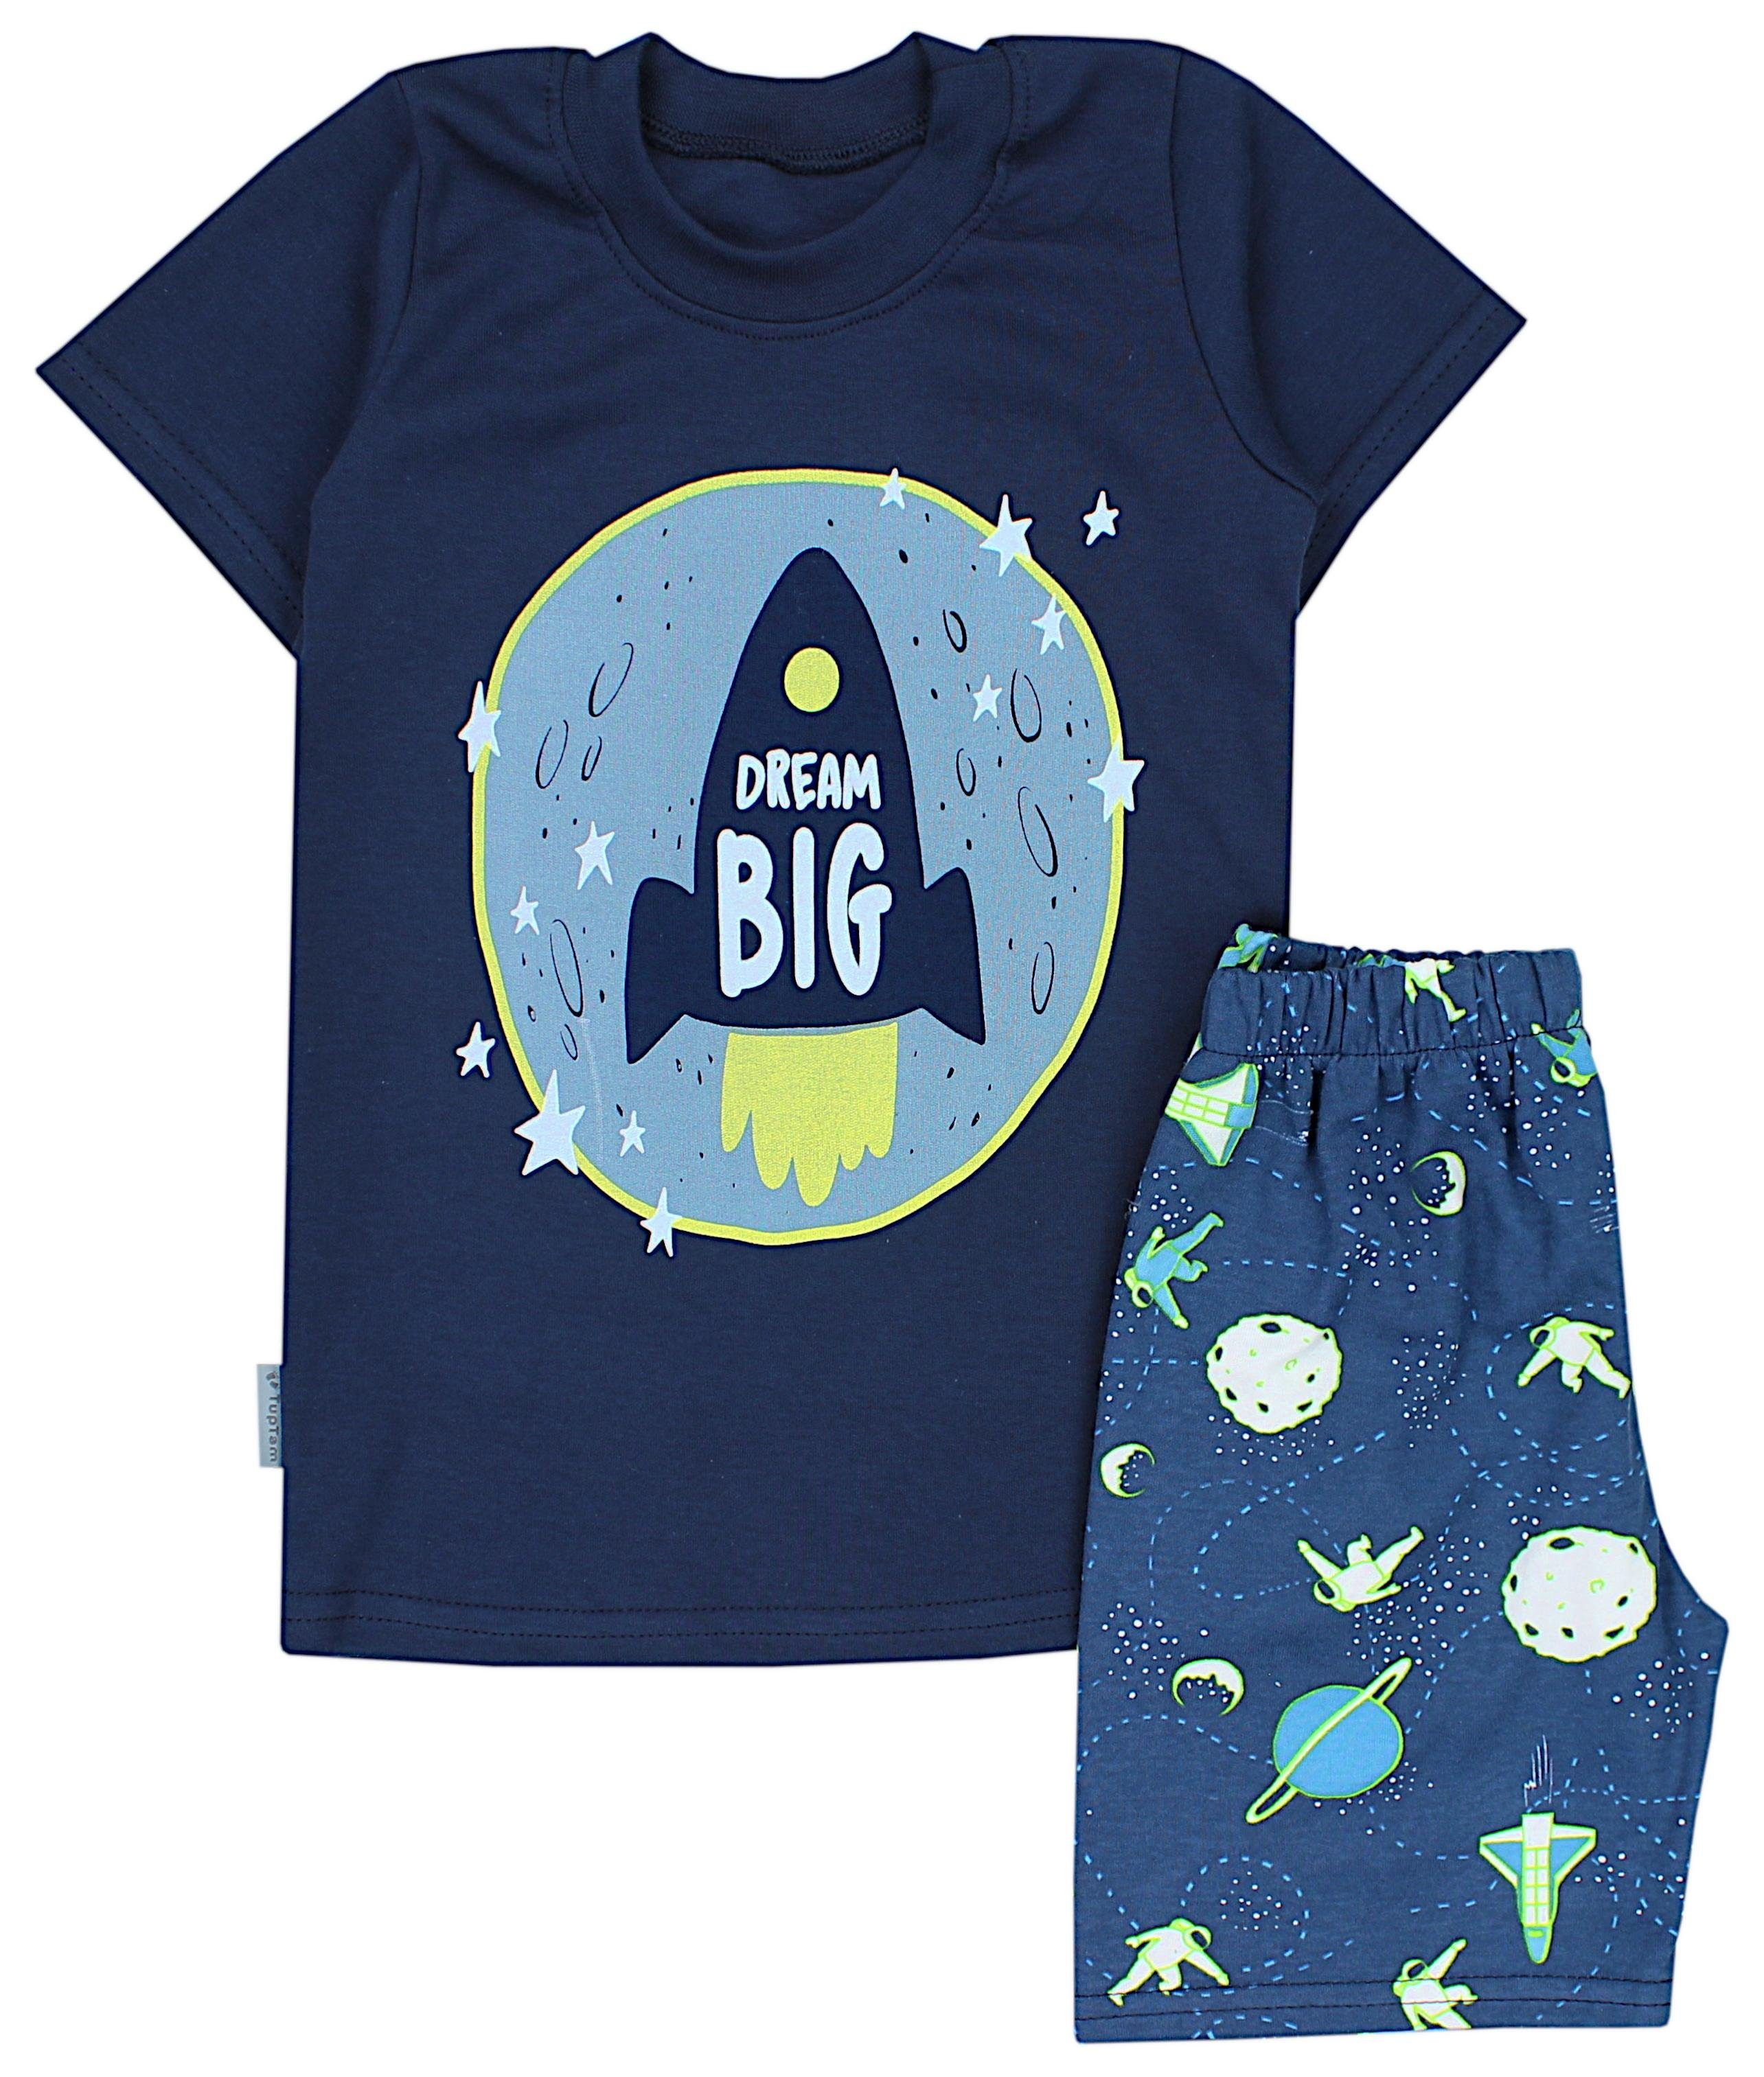 TupTam Schlafanzug Kinder Jungen Pyjama Schlafanzug Set Kurzarm 2-teilig Sommer Kosmos Dunkelblau / Grün